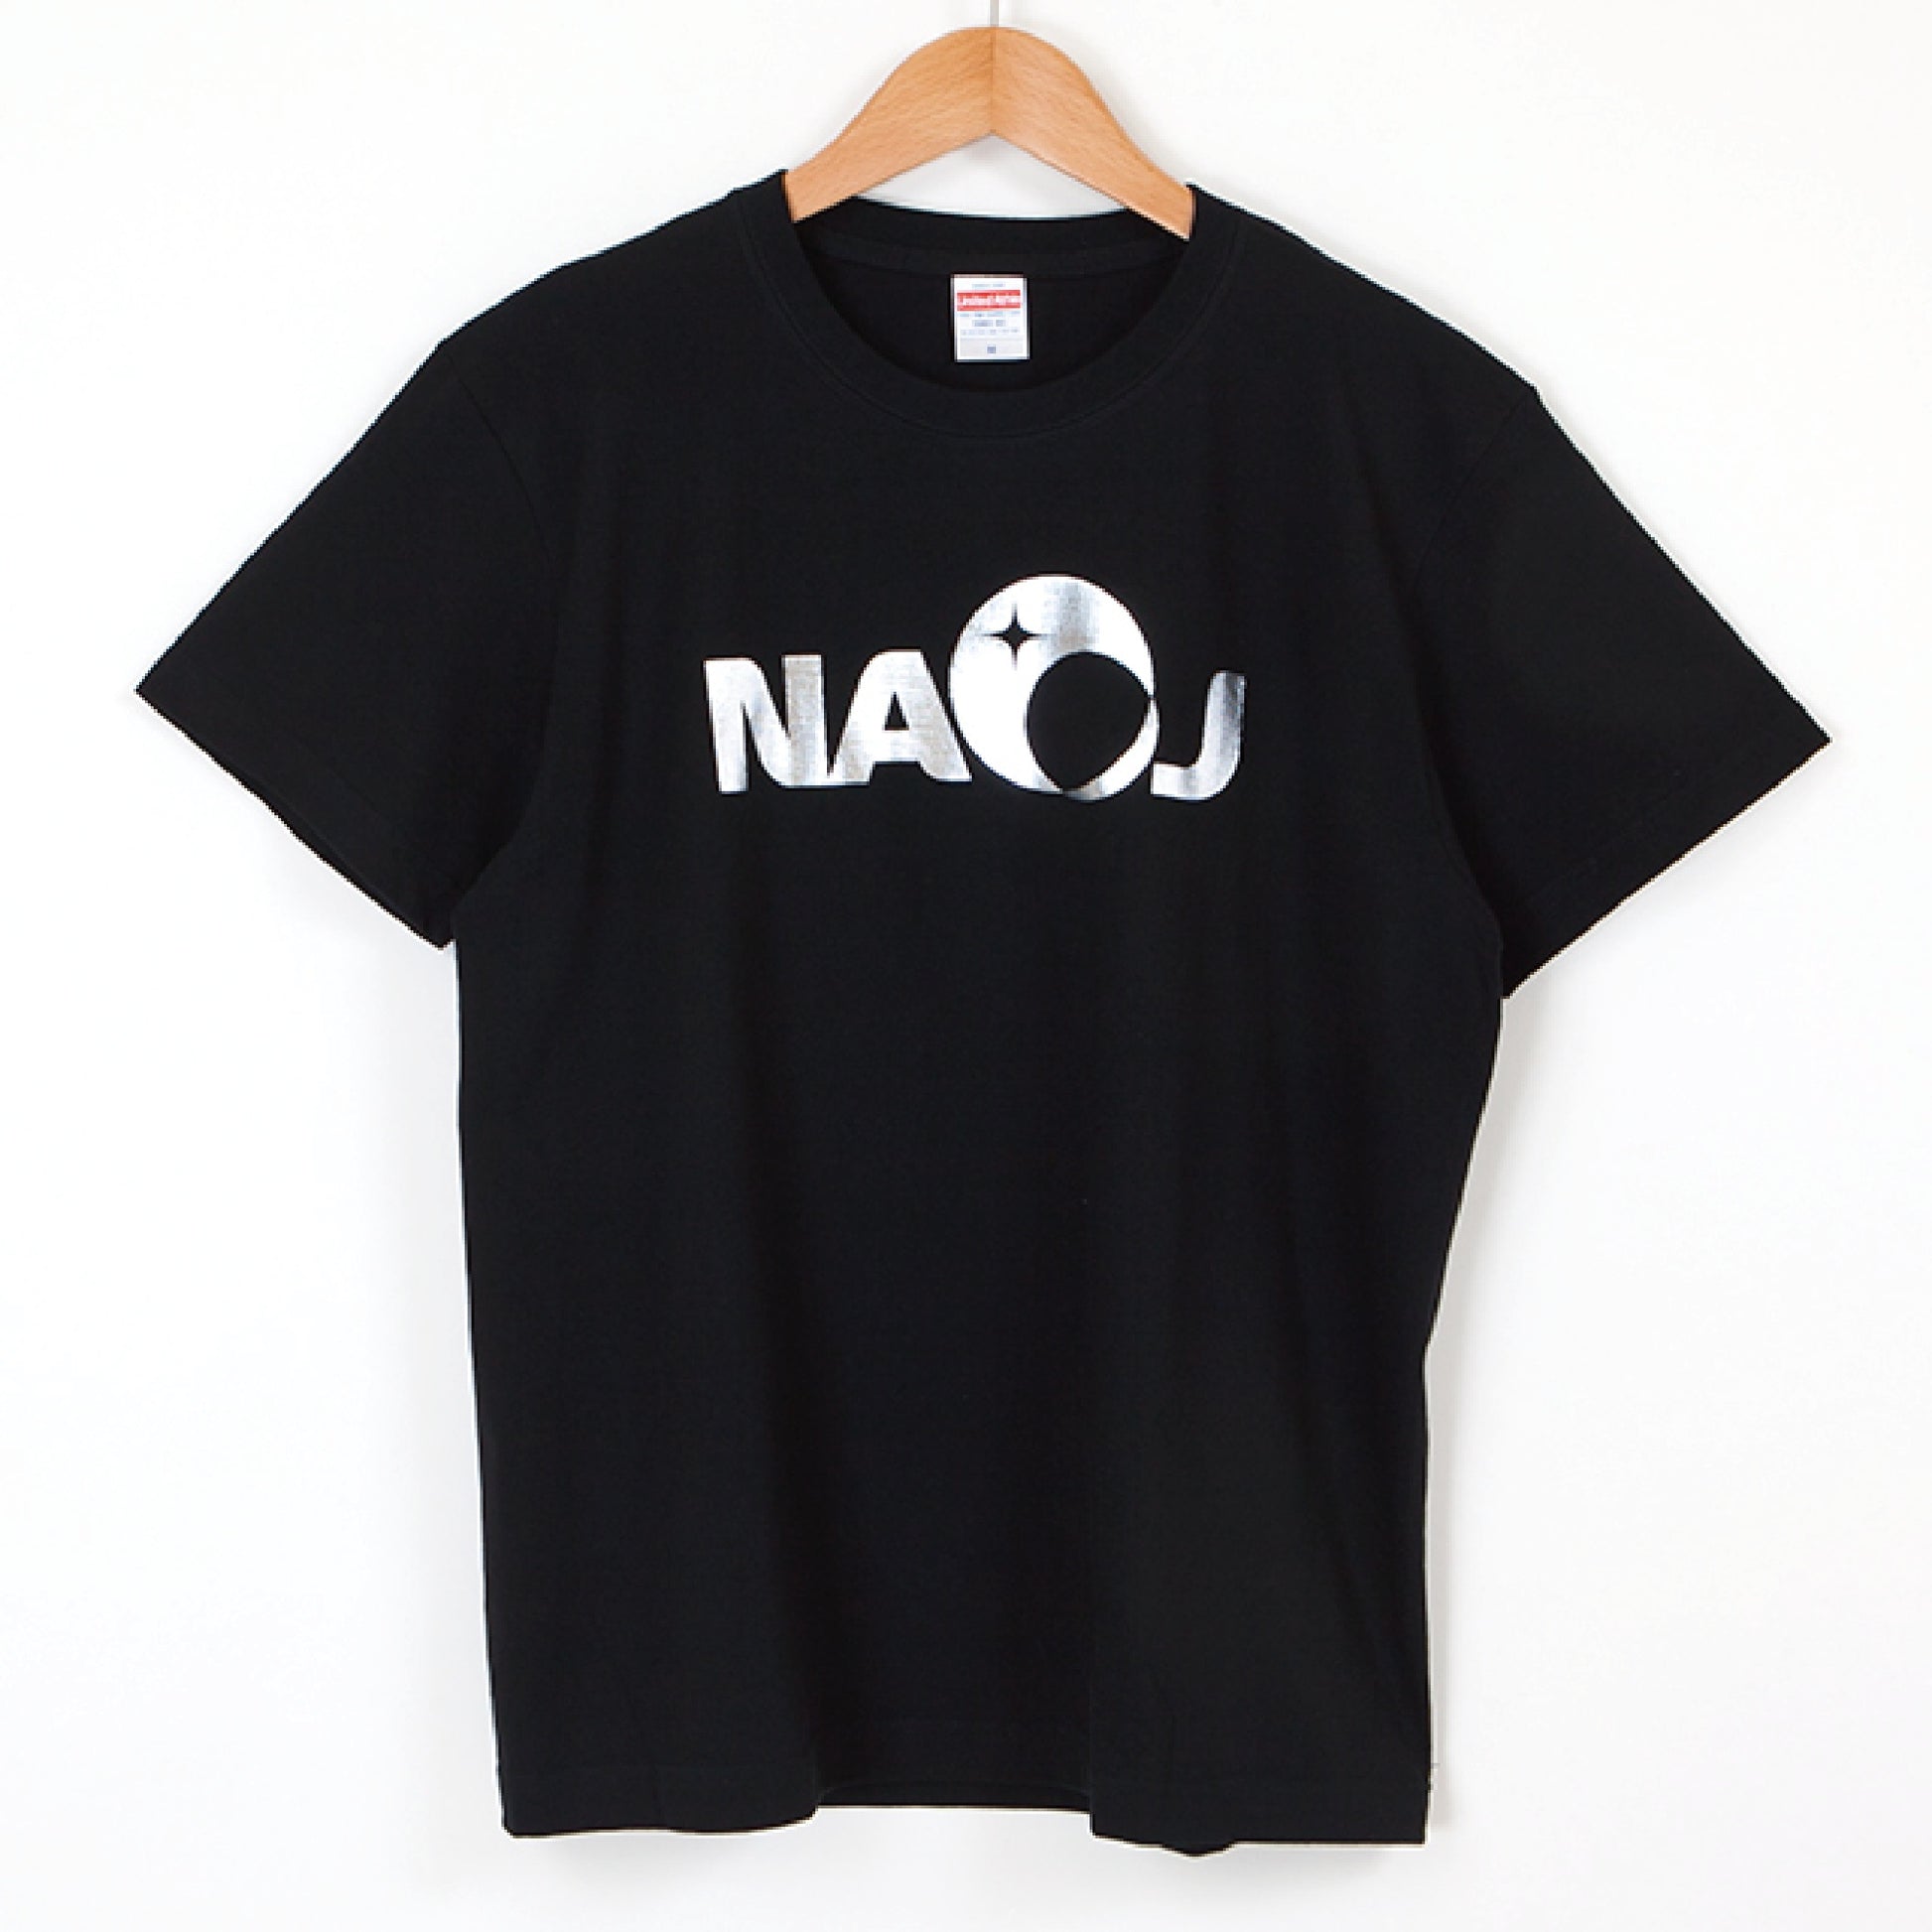 国立天文台 NAOJ ロゴマーク きらきら Tシャツ ブラック S 00